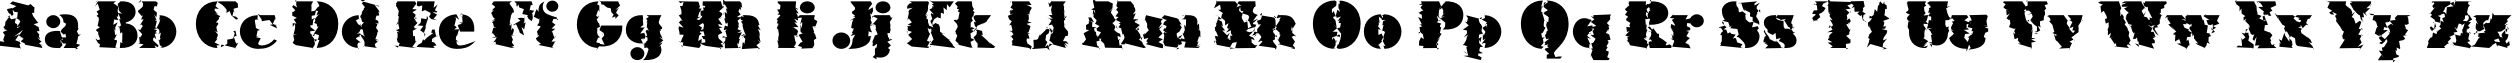 Пример написания английского алфавита шрифтом FuturaEugC_Winter90